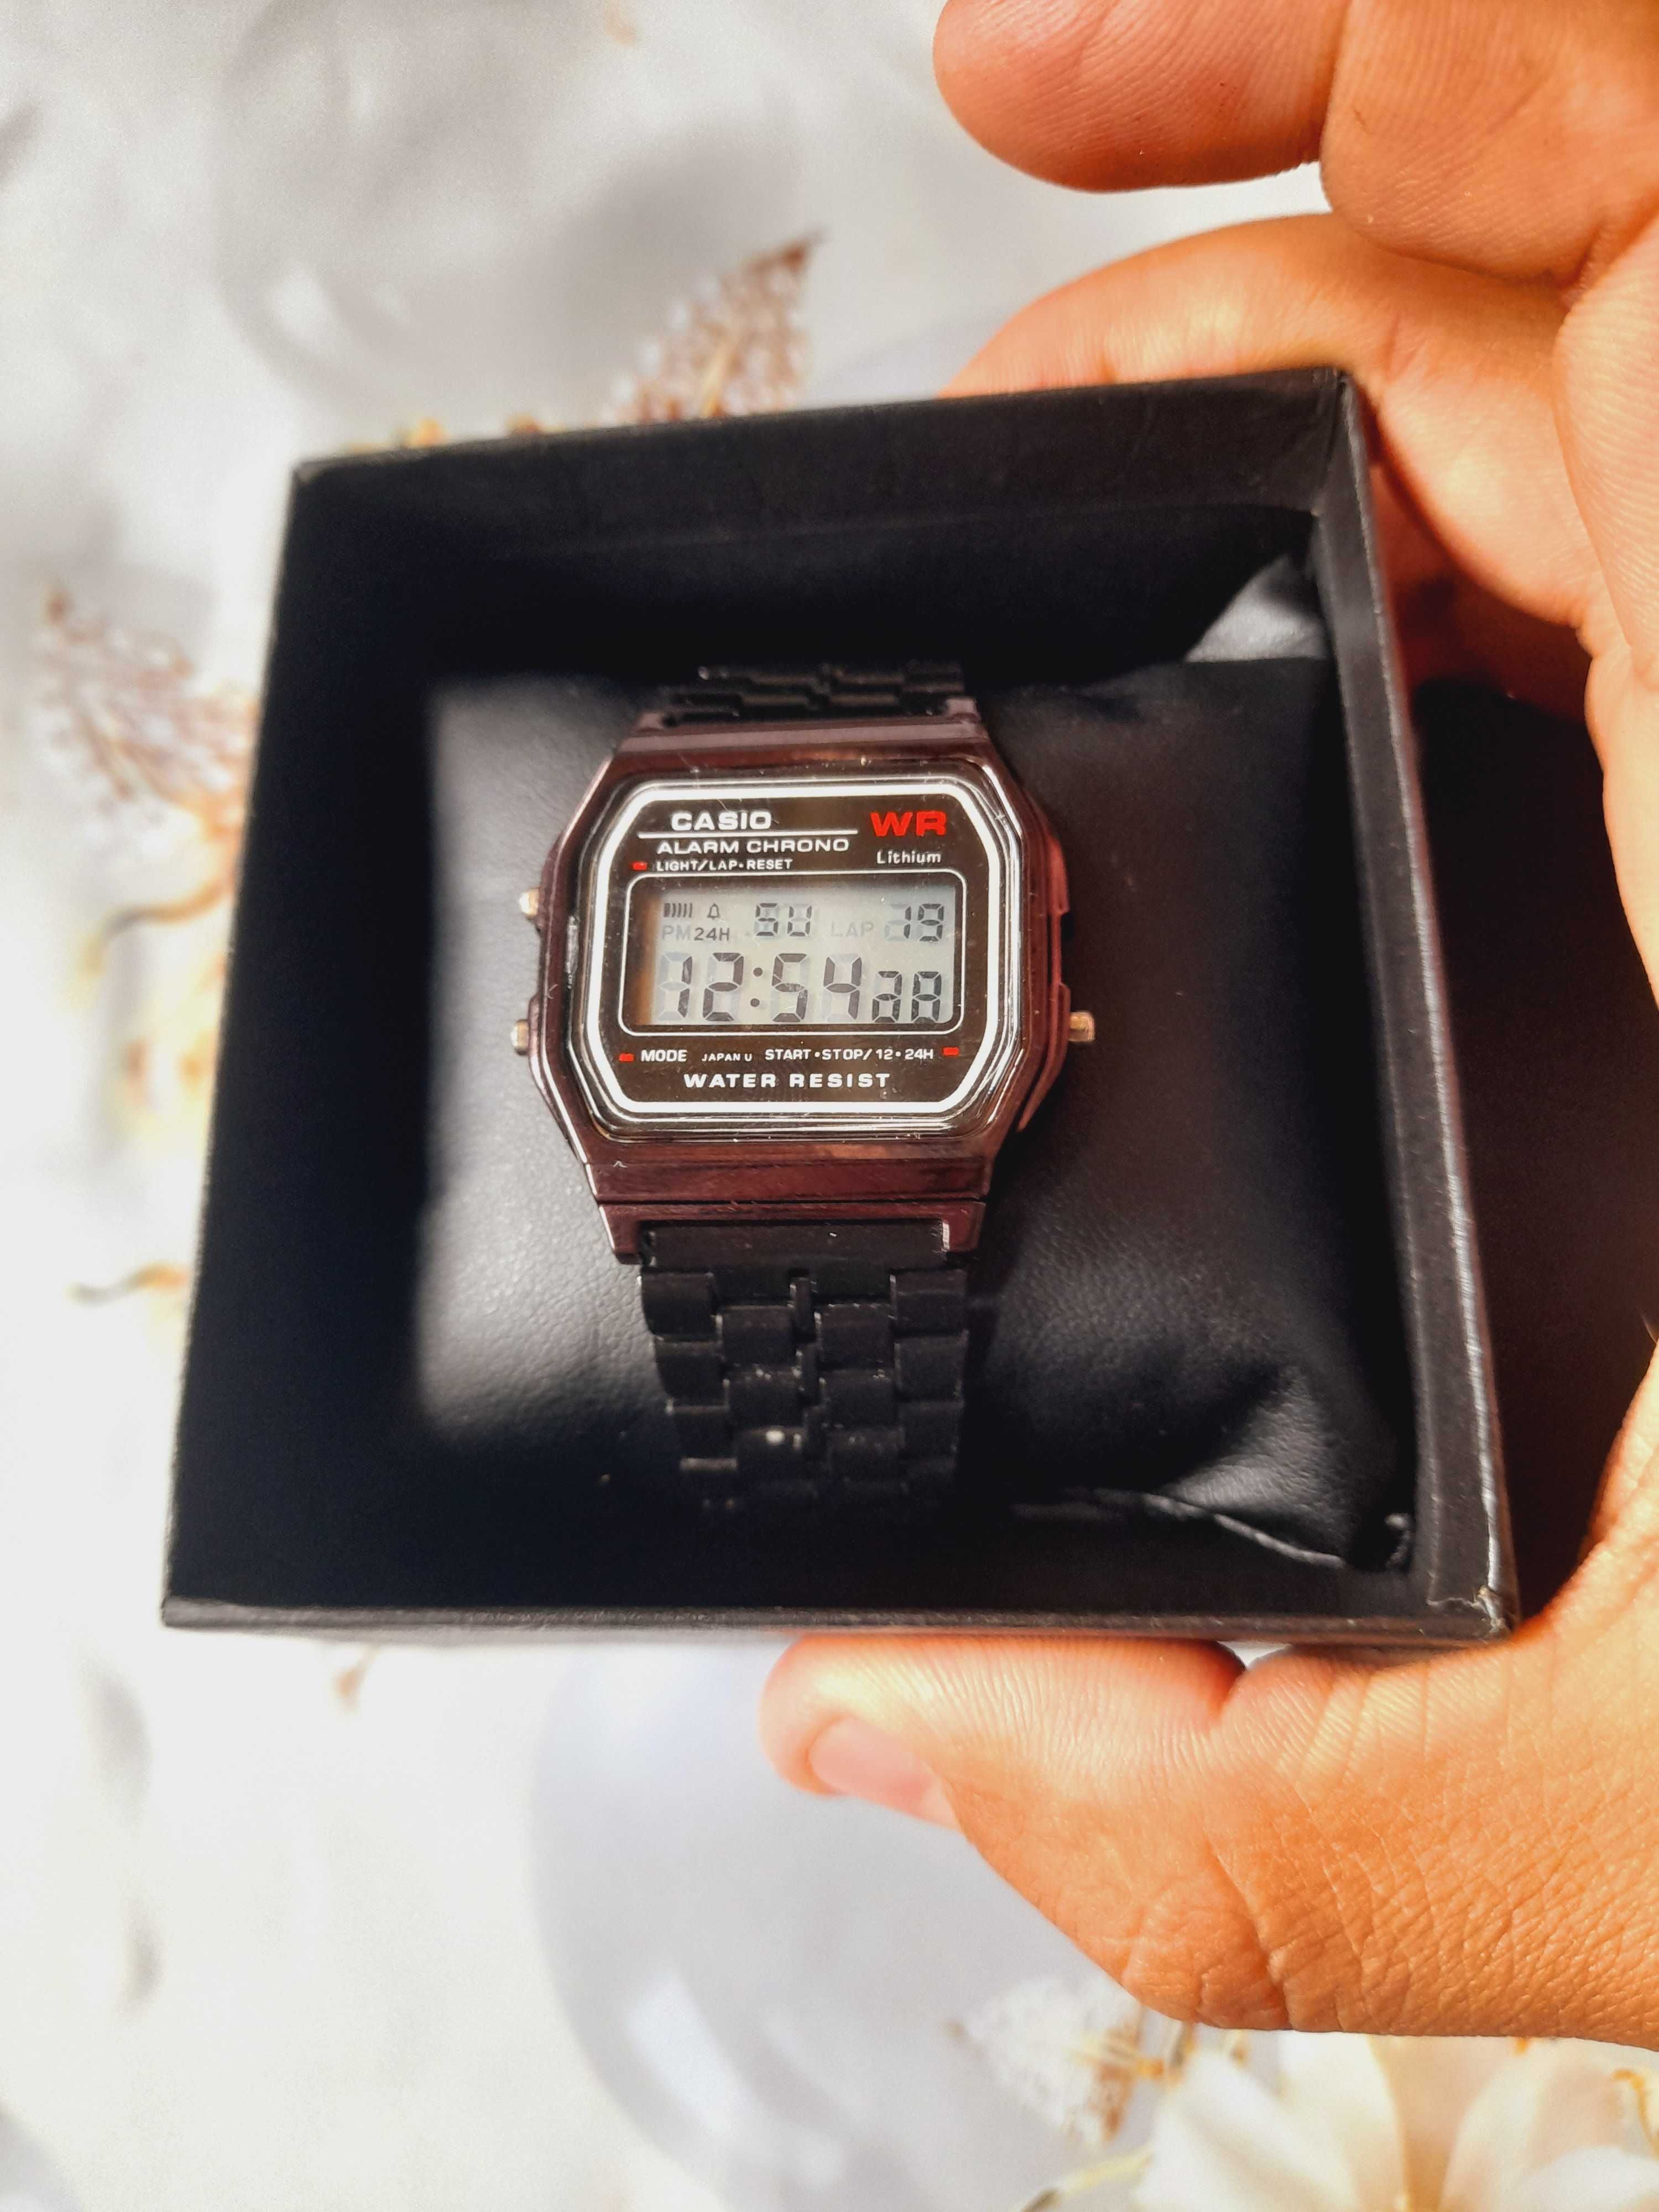 Часы Casio с коробкой